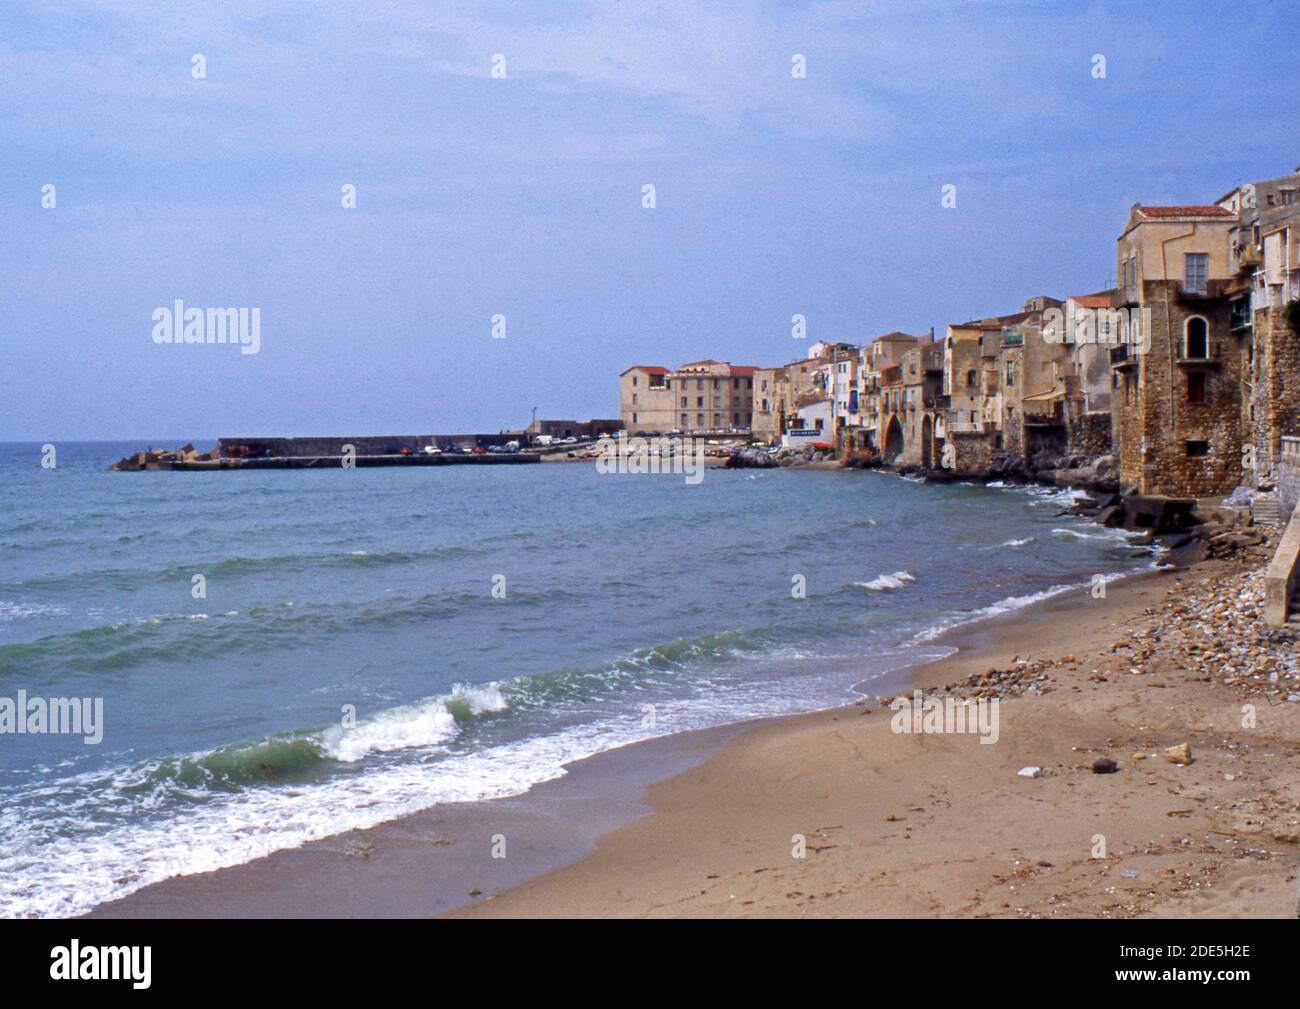 Reportage Sicile, Italie, 1992, plage de Cefalù (scanné depuis la diapositive Agfachrome) Banque D'Images